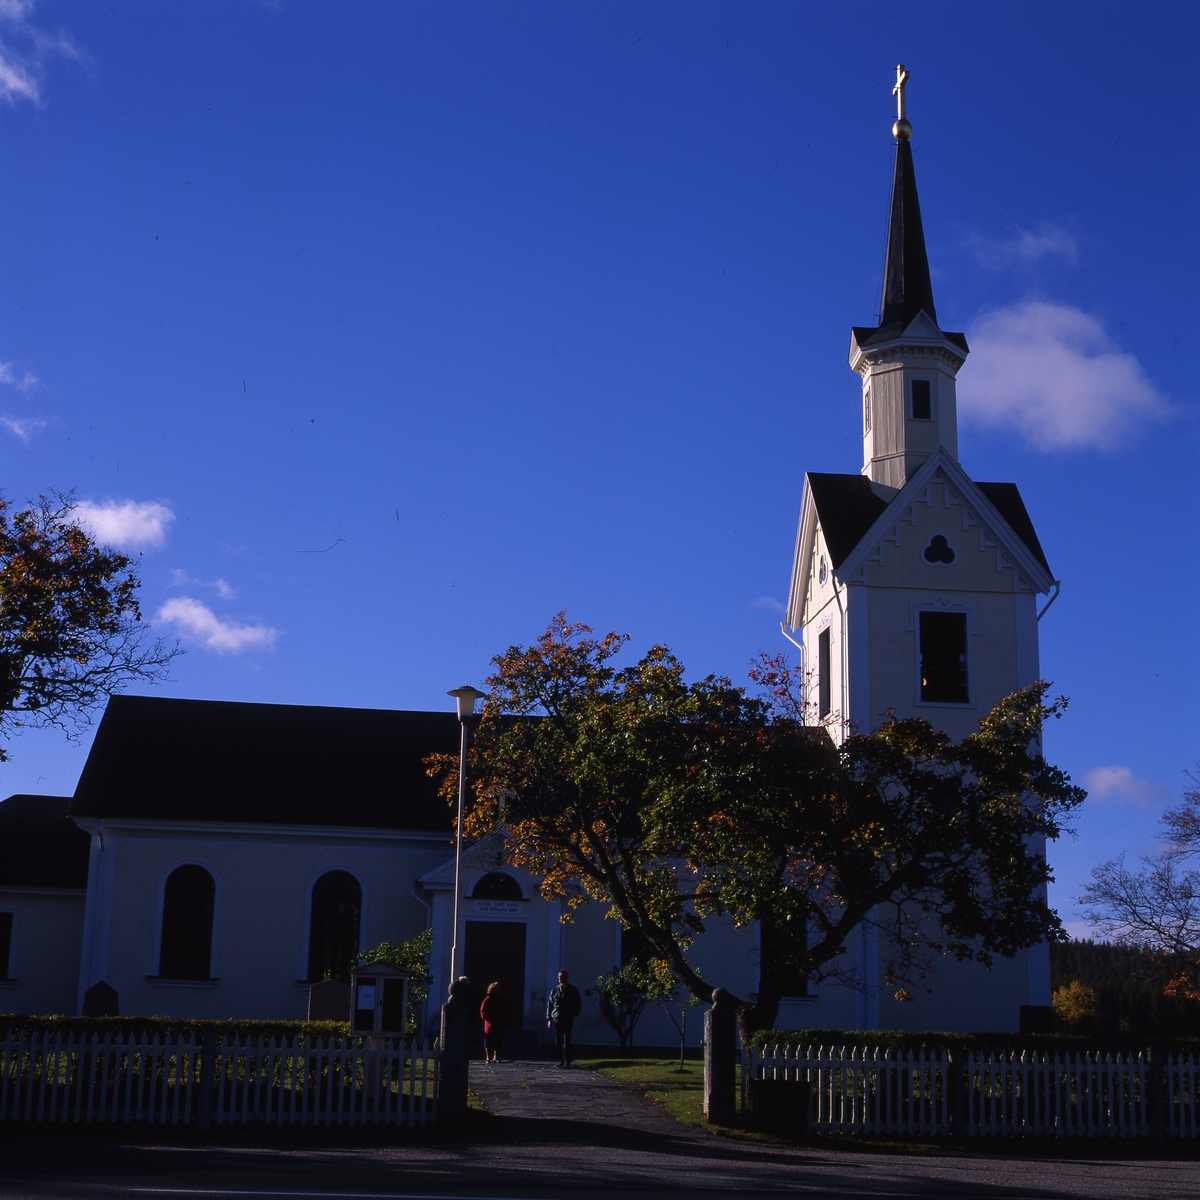 Kårböle kyrka byggd i nyklassicistisk stil i revetarat trä och invigdes 1870, 1996. Den ligger utmed den gamla pilgrimsvägen till Nidaros.